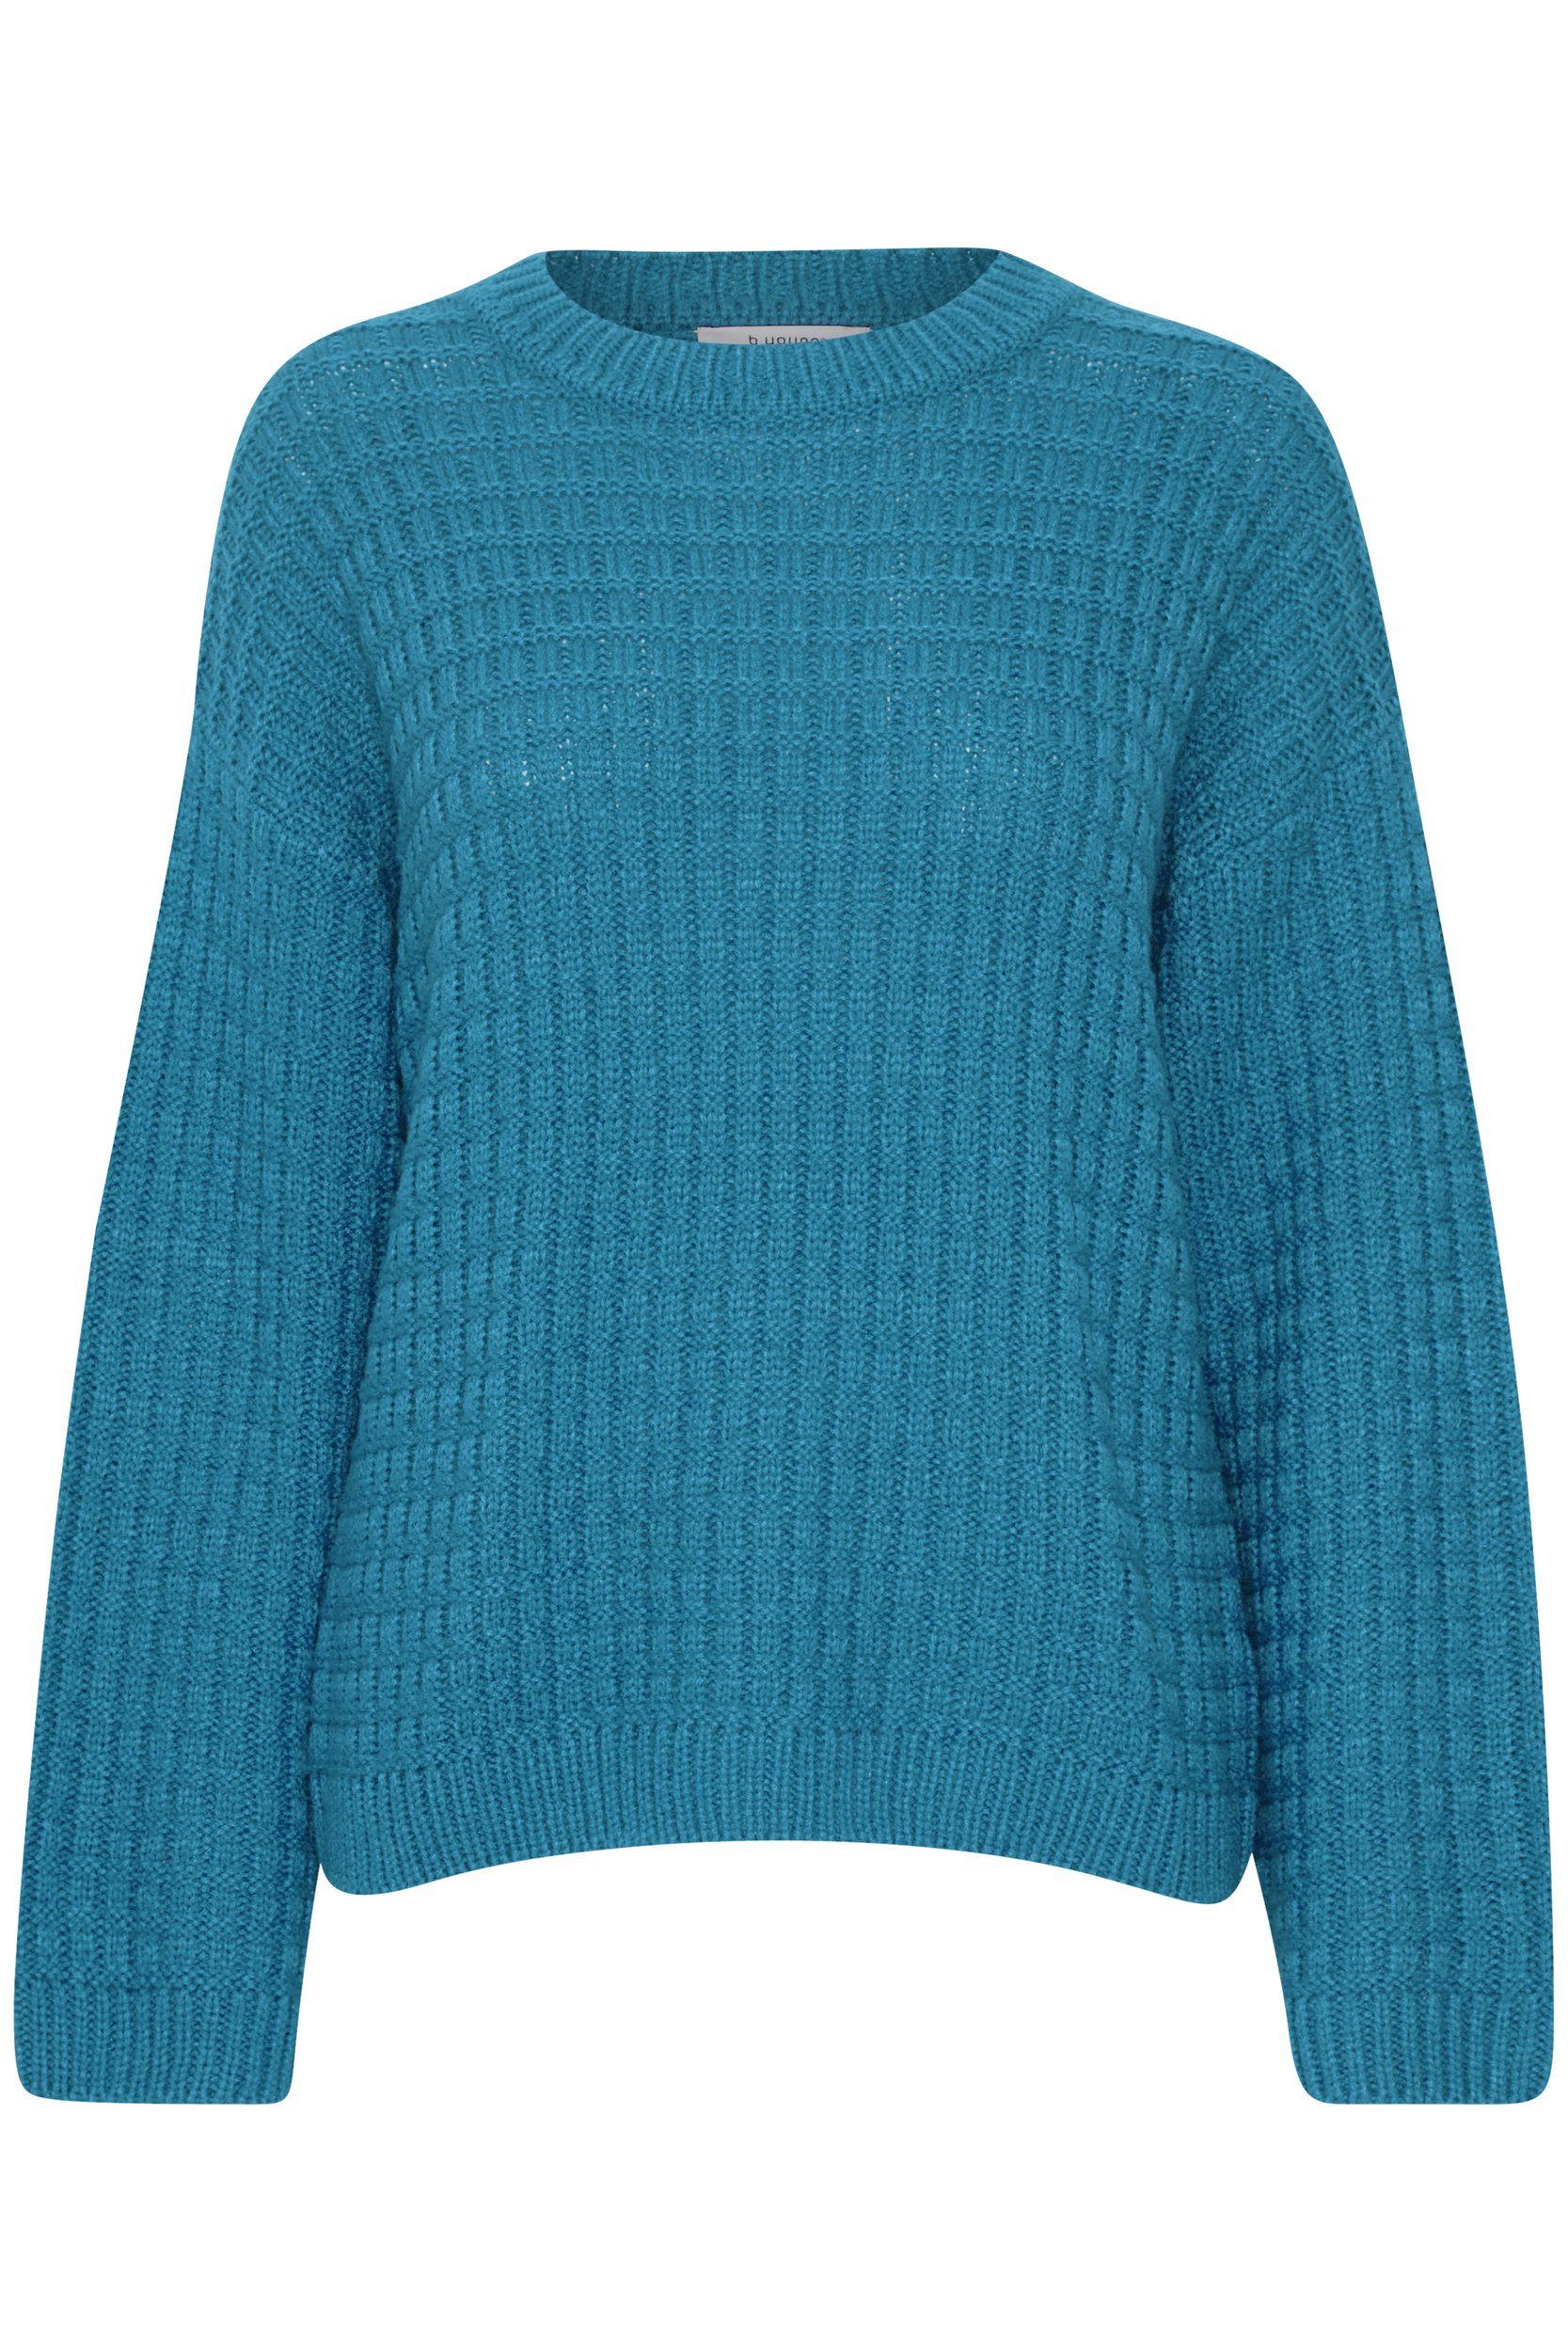 b.young Pullover Grobstrick Schultern Abgesetzten Sweater Strickpullover mit 6664 in Blau